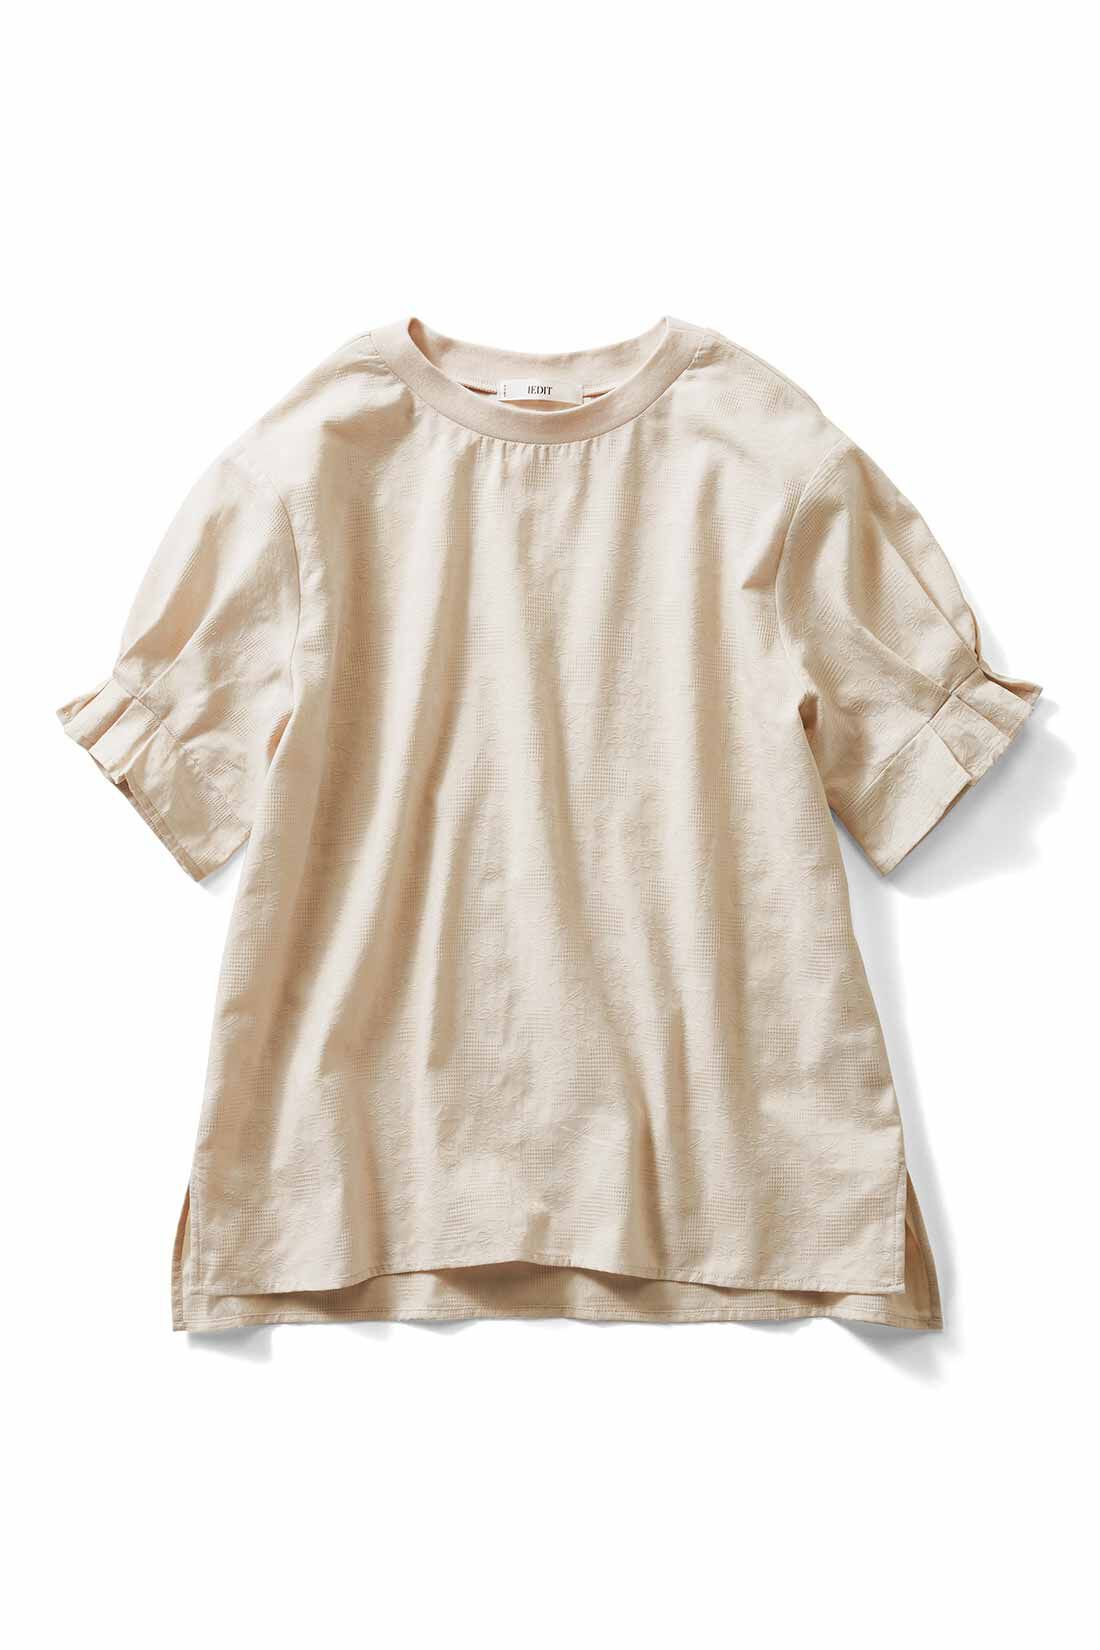 IEDIT[イディット]　フラワー織り柄で気分があがる コットンドビー素材の袖デザインプルオーバー|エクリュベージュ